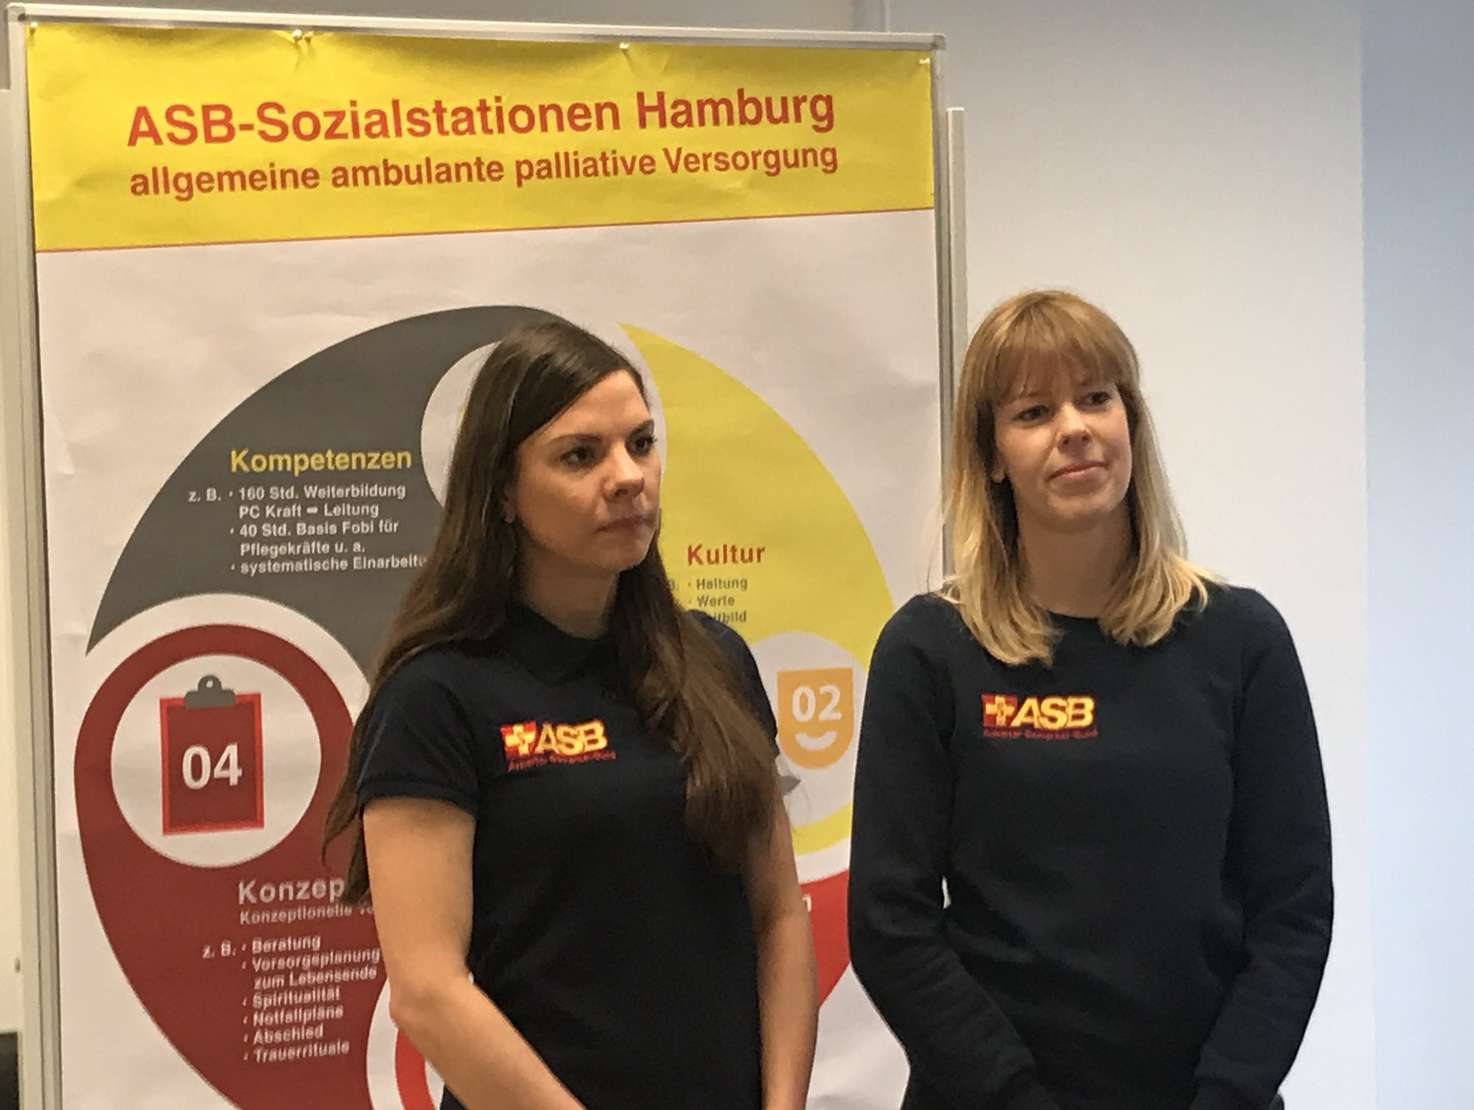 Die Pflegefachkräfte des ASB Hamburg Nadine Tjessem (links) und Svenja Jacobsen (rechts) sind speziell ausgebildet im Bereich der ambulanten Palliativversorgung und bieten regelmäßig Letzte-Hilfe-Kurse an. Foto ASB Hamburg / P. Witt.